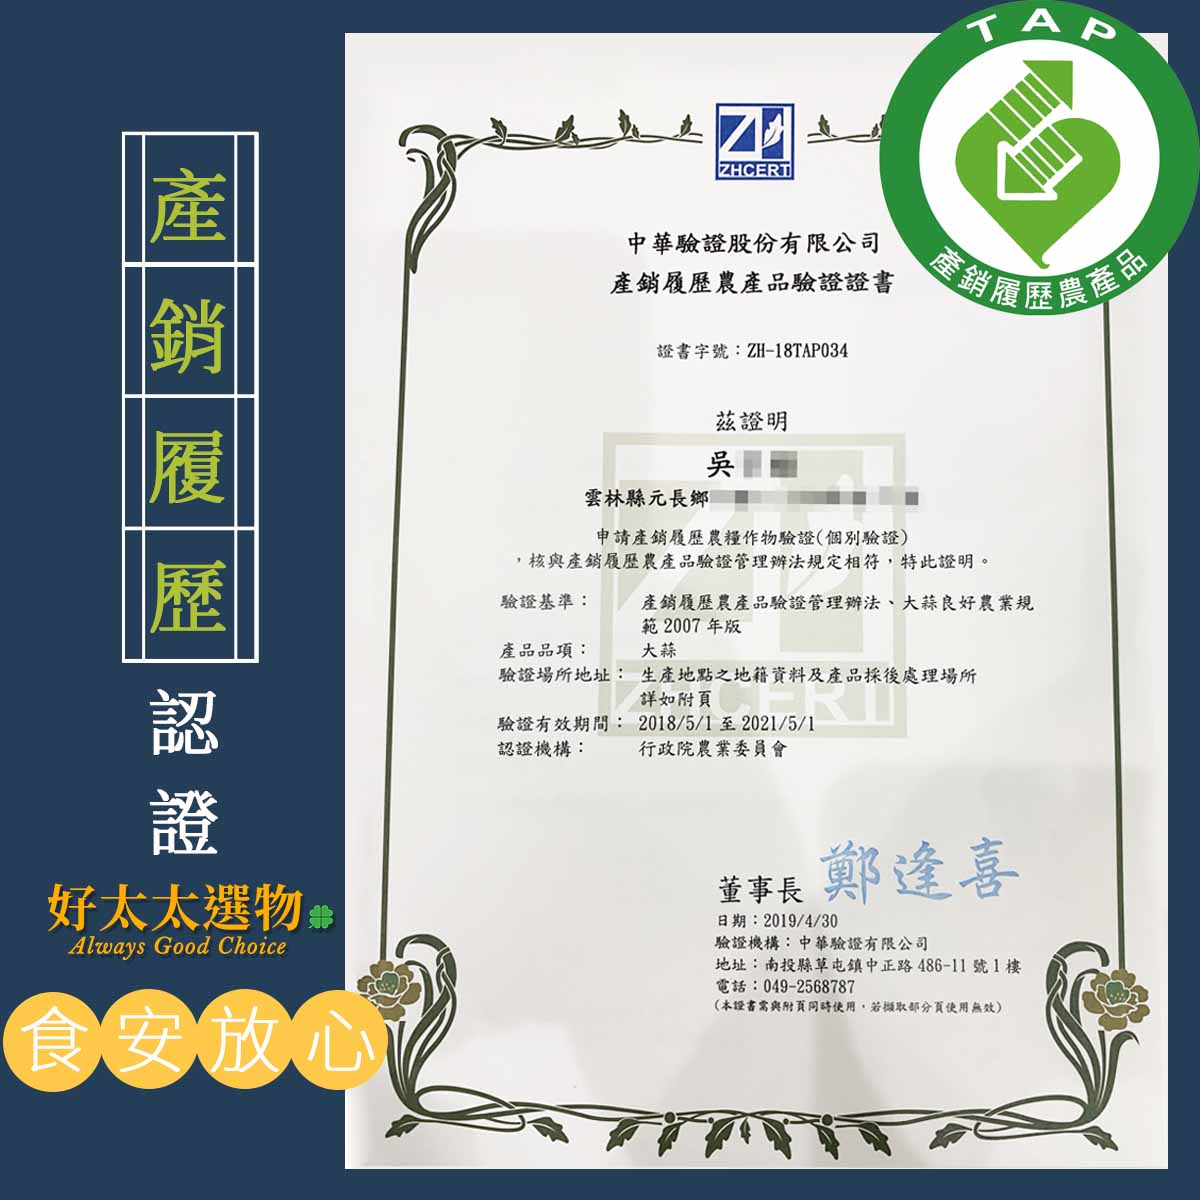 這是吳大哥的產銷履歷証書，每年採收前都會由驗證公司檢測農藥絕無殘留。